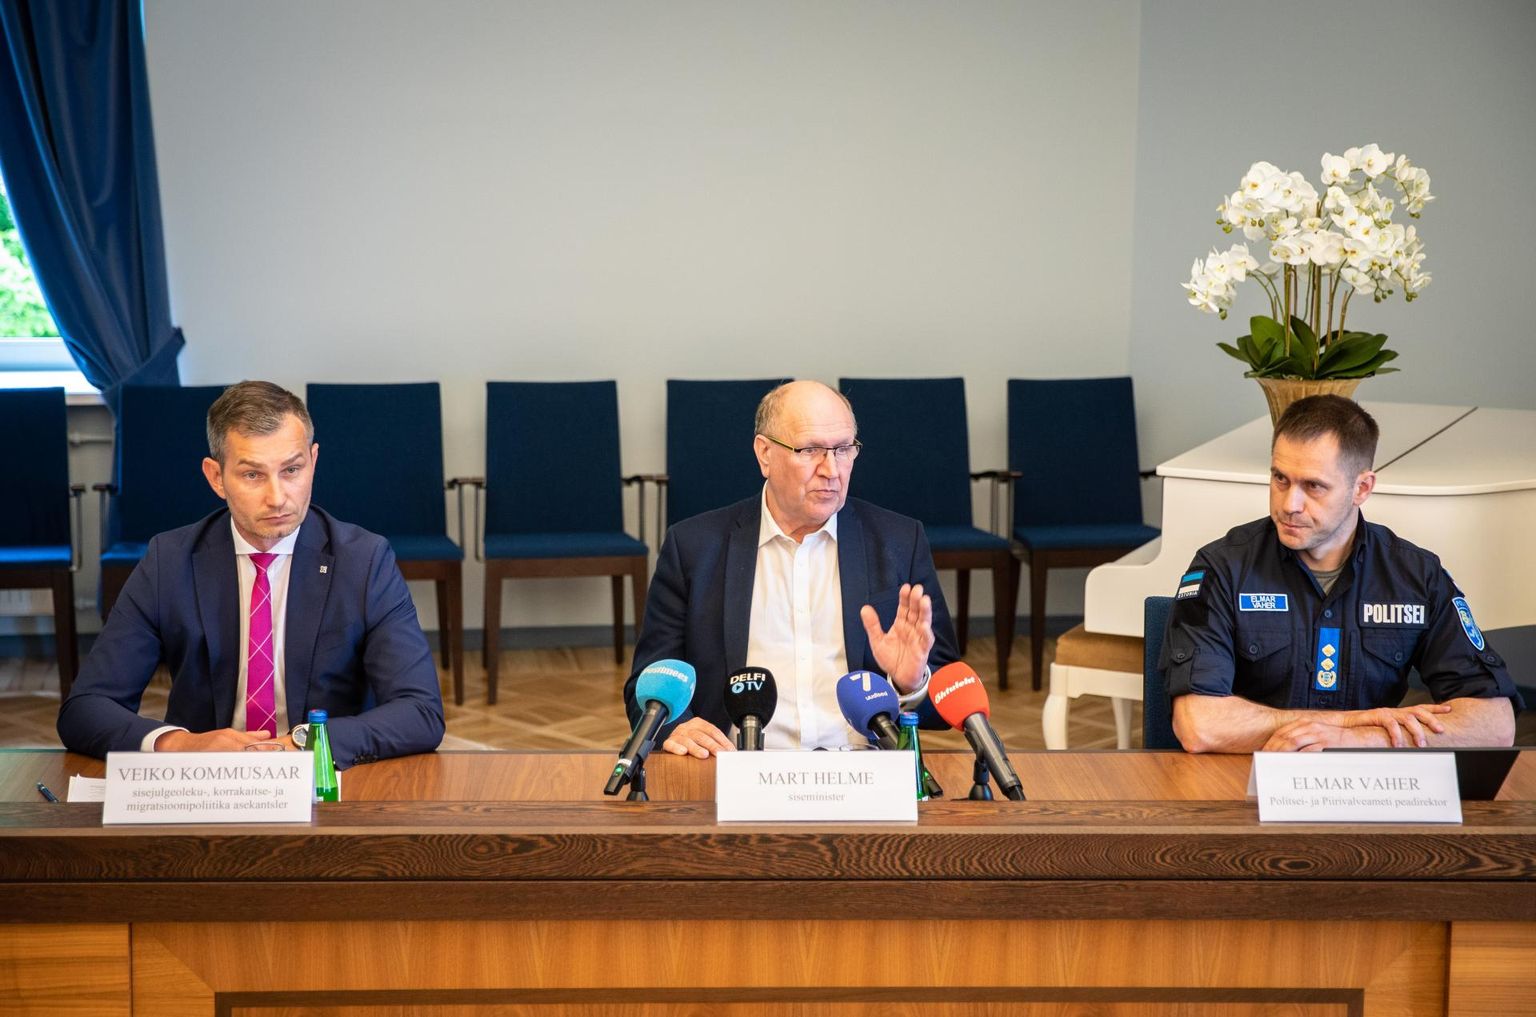 Sisejulgeoleku-, korrakaitse- ja migratsioonipoliitika asekantsler Veiko Kommusaar (vasakult), siseminister Mart Helme ning politsei- ja piirivalveameti peadirektor Elmar Vaher.